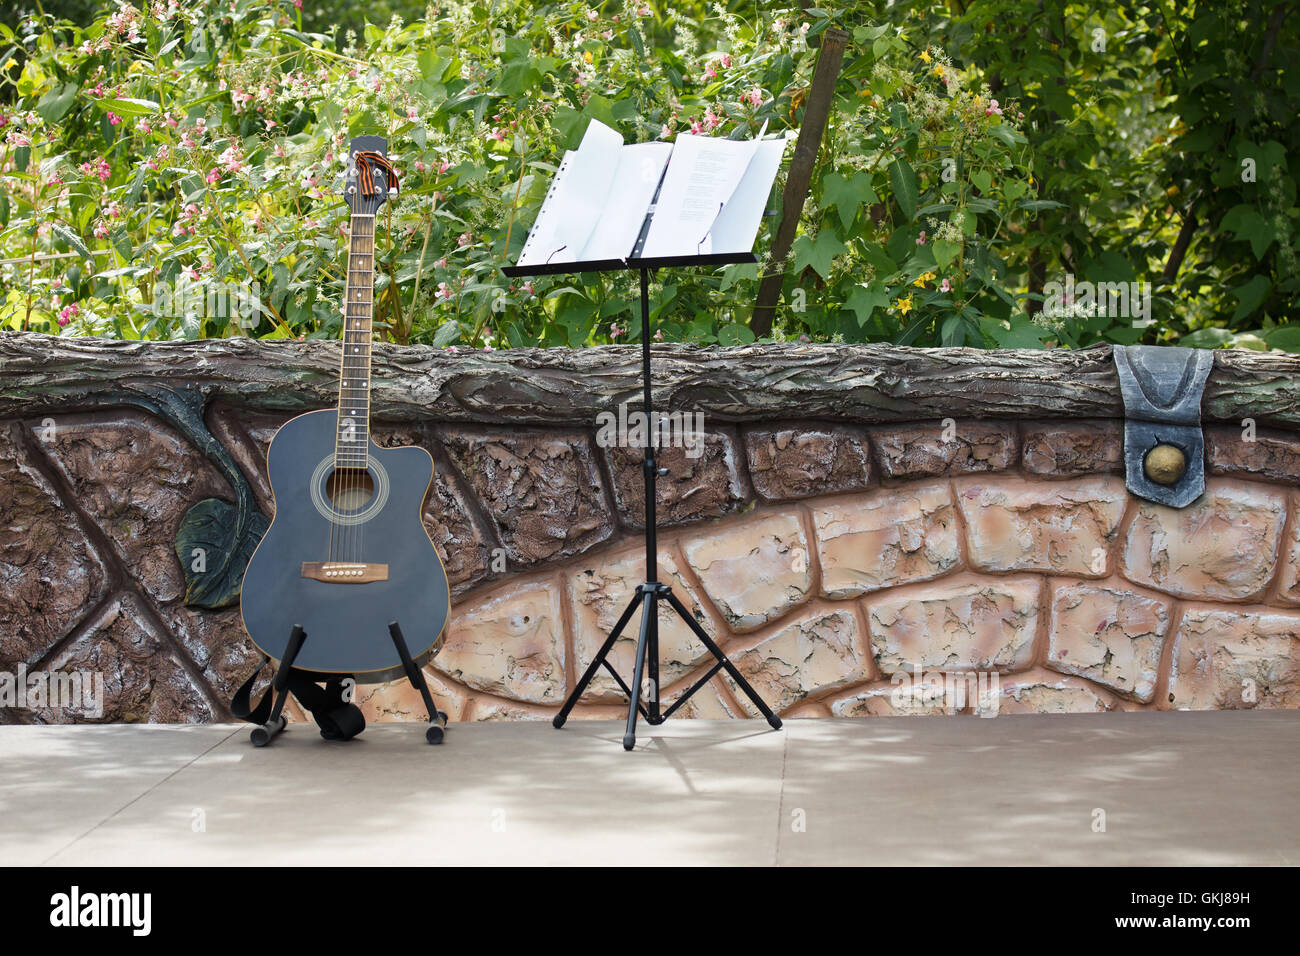 Encore de concert. Guitare acoustique debout sur la scène ouverte près de la clôture. Derrière la grille d'un jardin. Banque D'Images